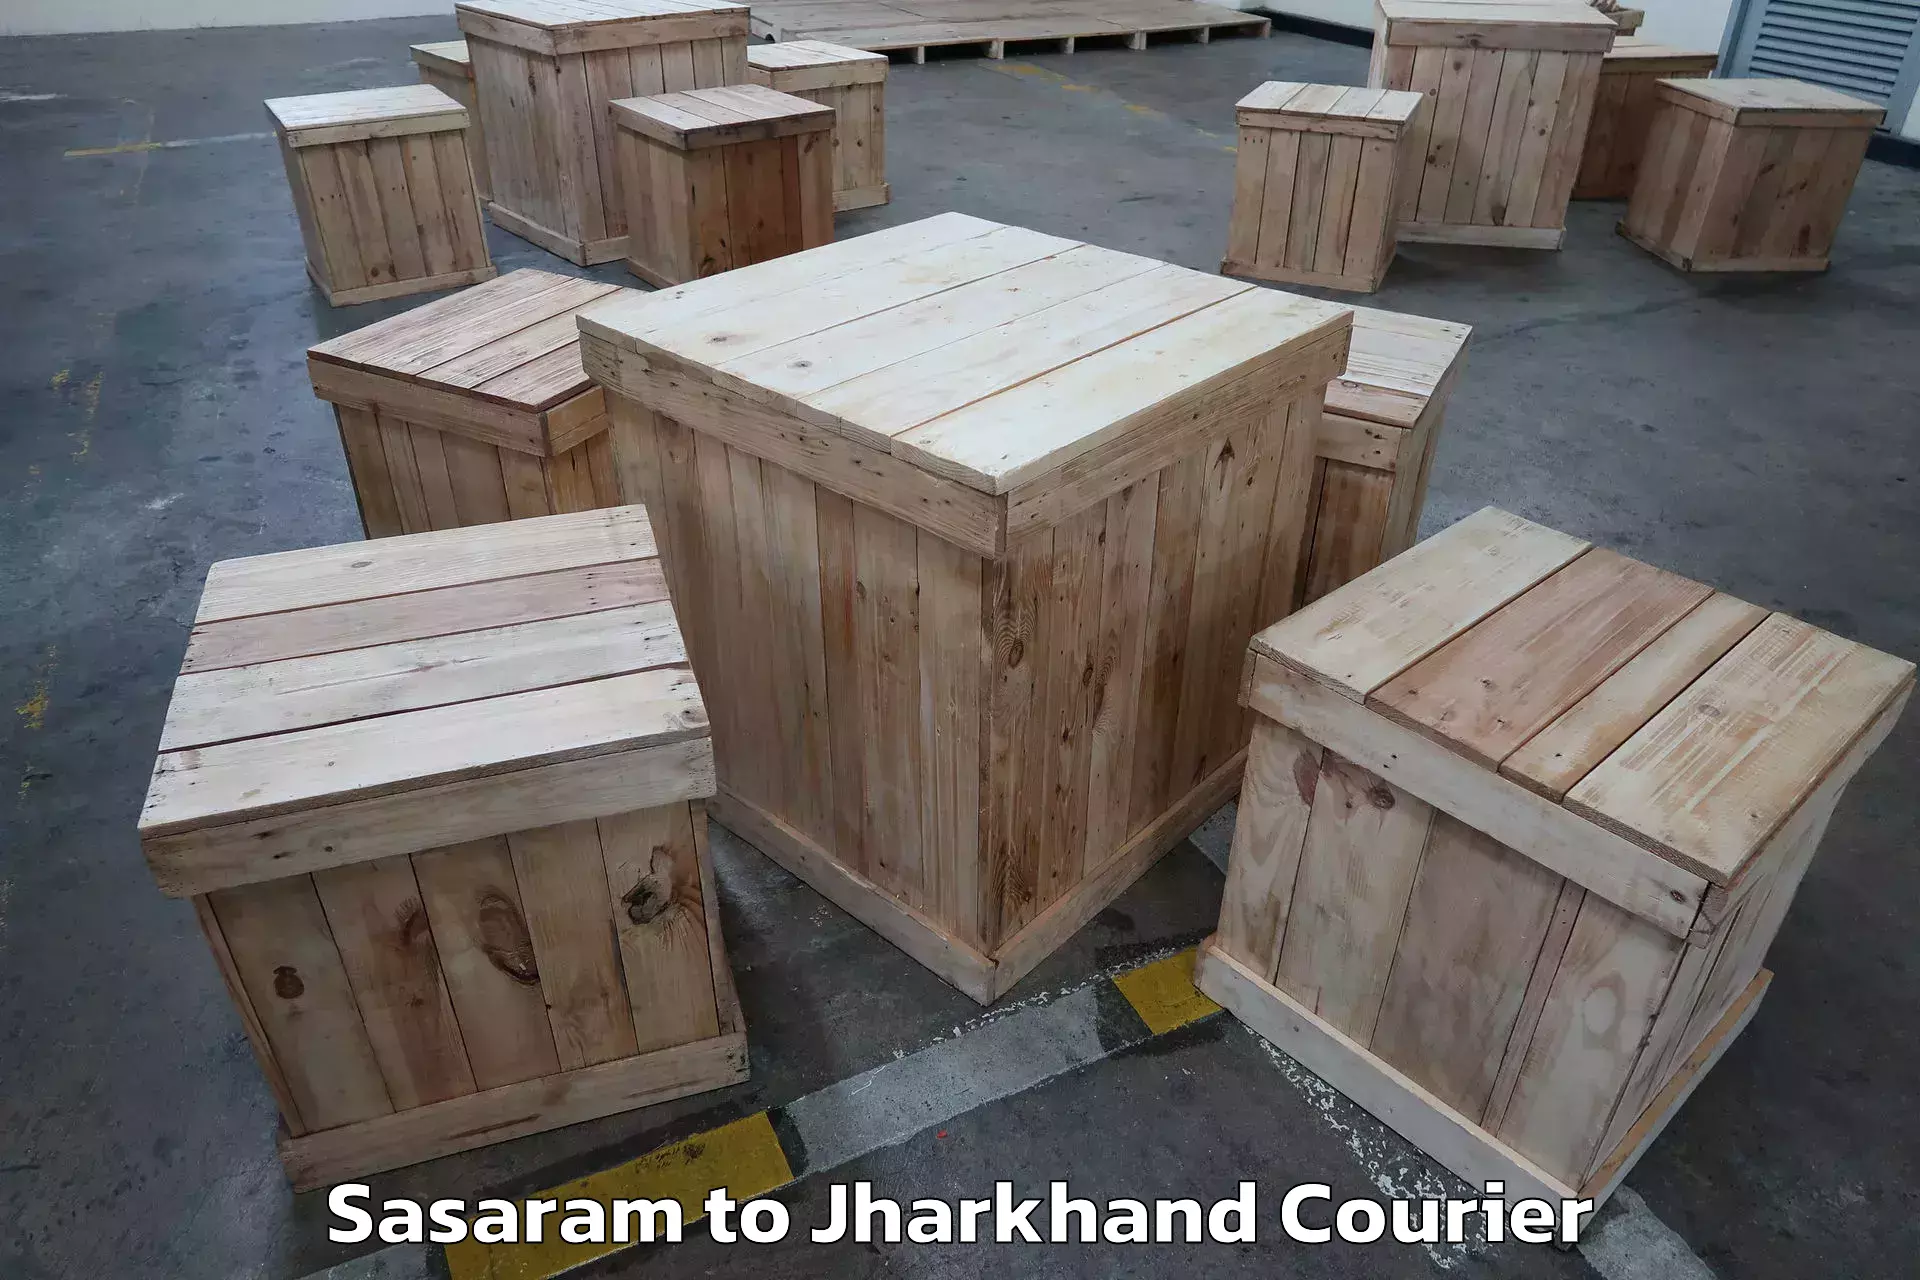 Furniture moving experts Sasaram to Dhanbad